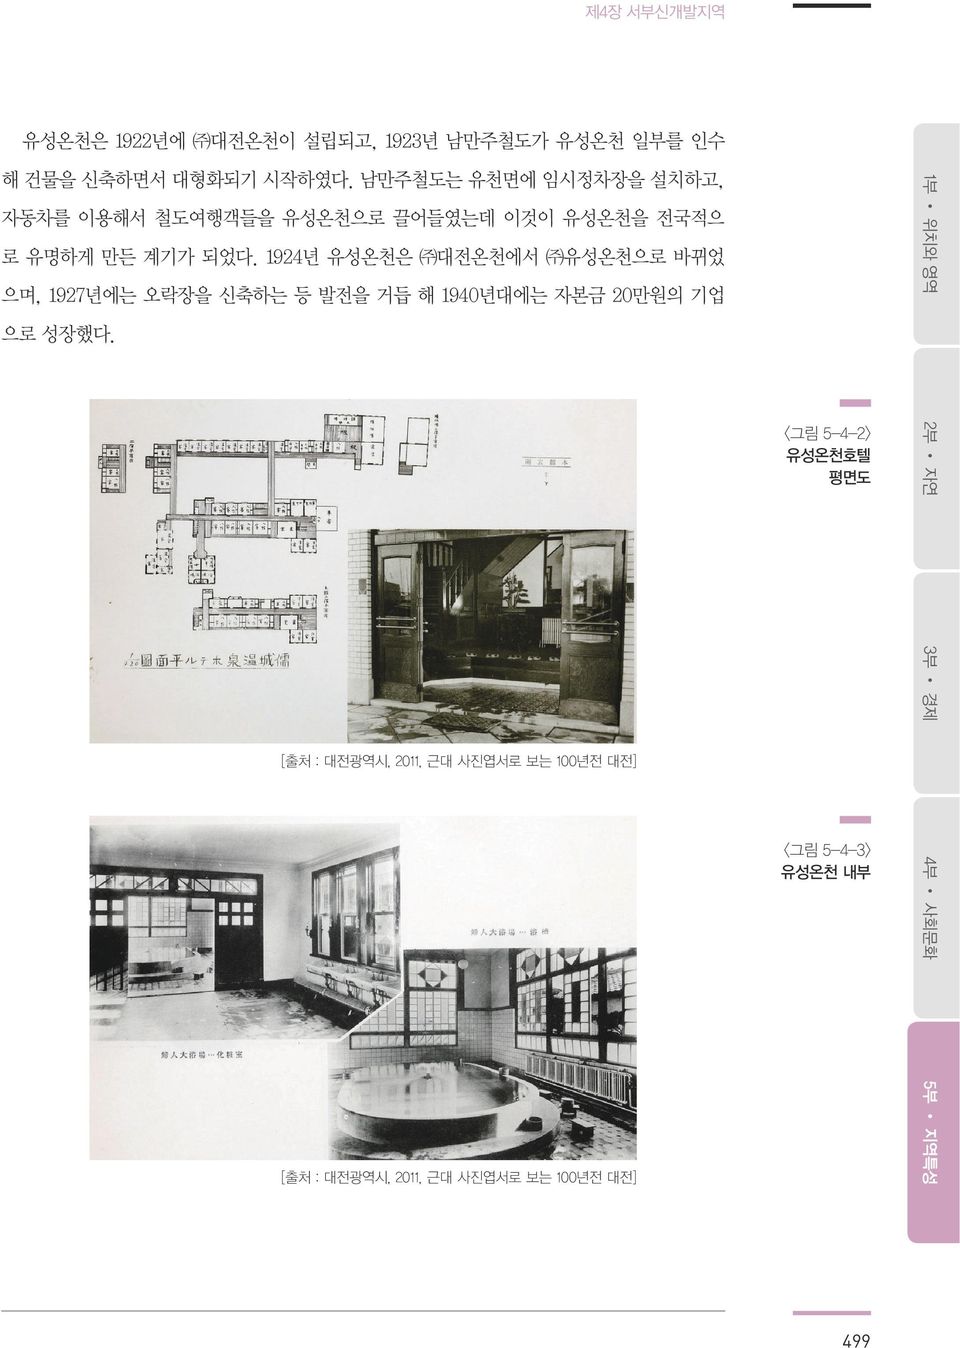 1924년 유성온천은 대전온천에서 유성온천으로 바뀌었 으며, 1927년에는 오락장을 신축하는 등 발전을 거듭 해 1940년대에는 자본금 20만원의 기업 으로 성장했다.